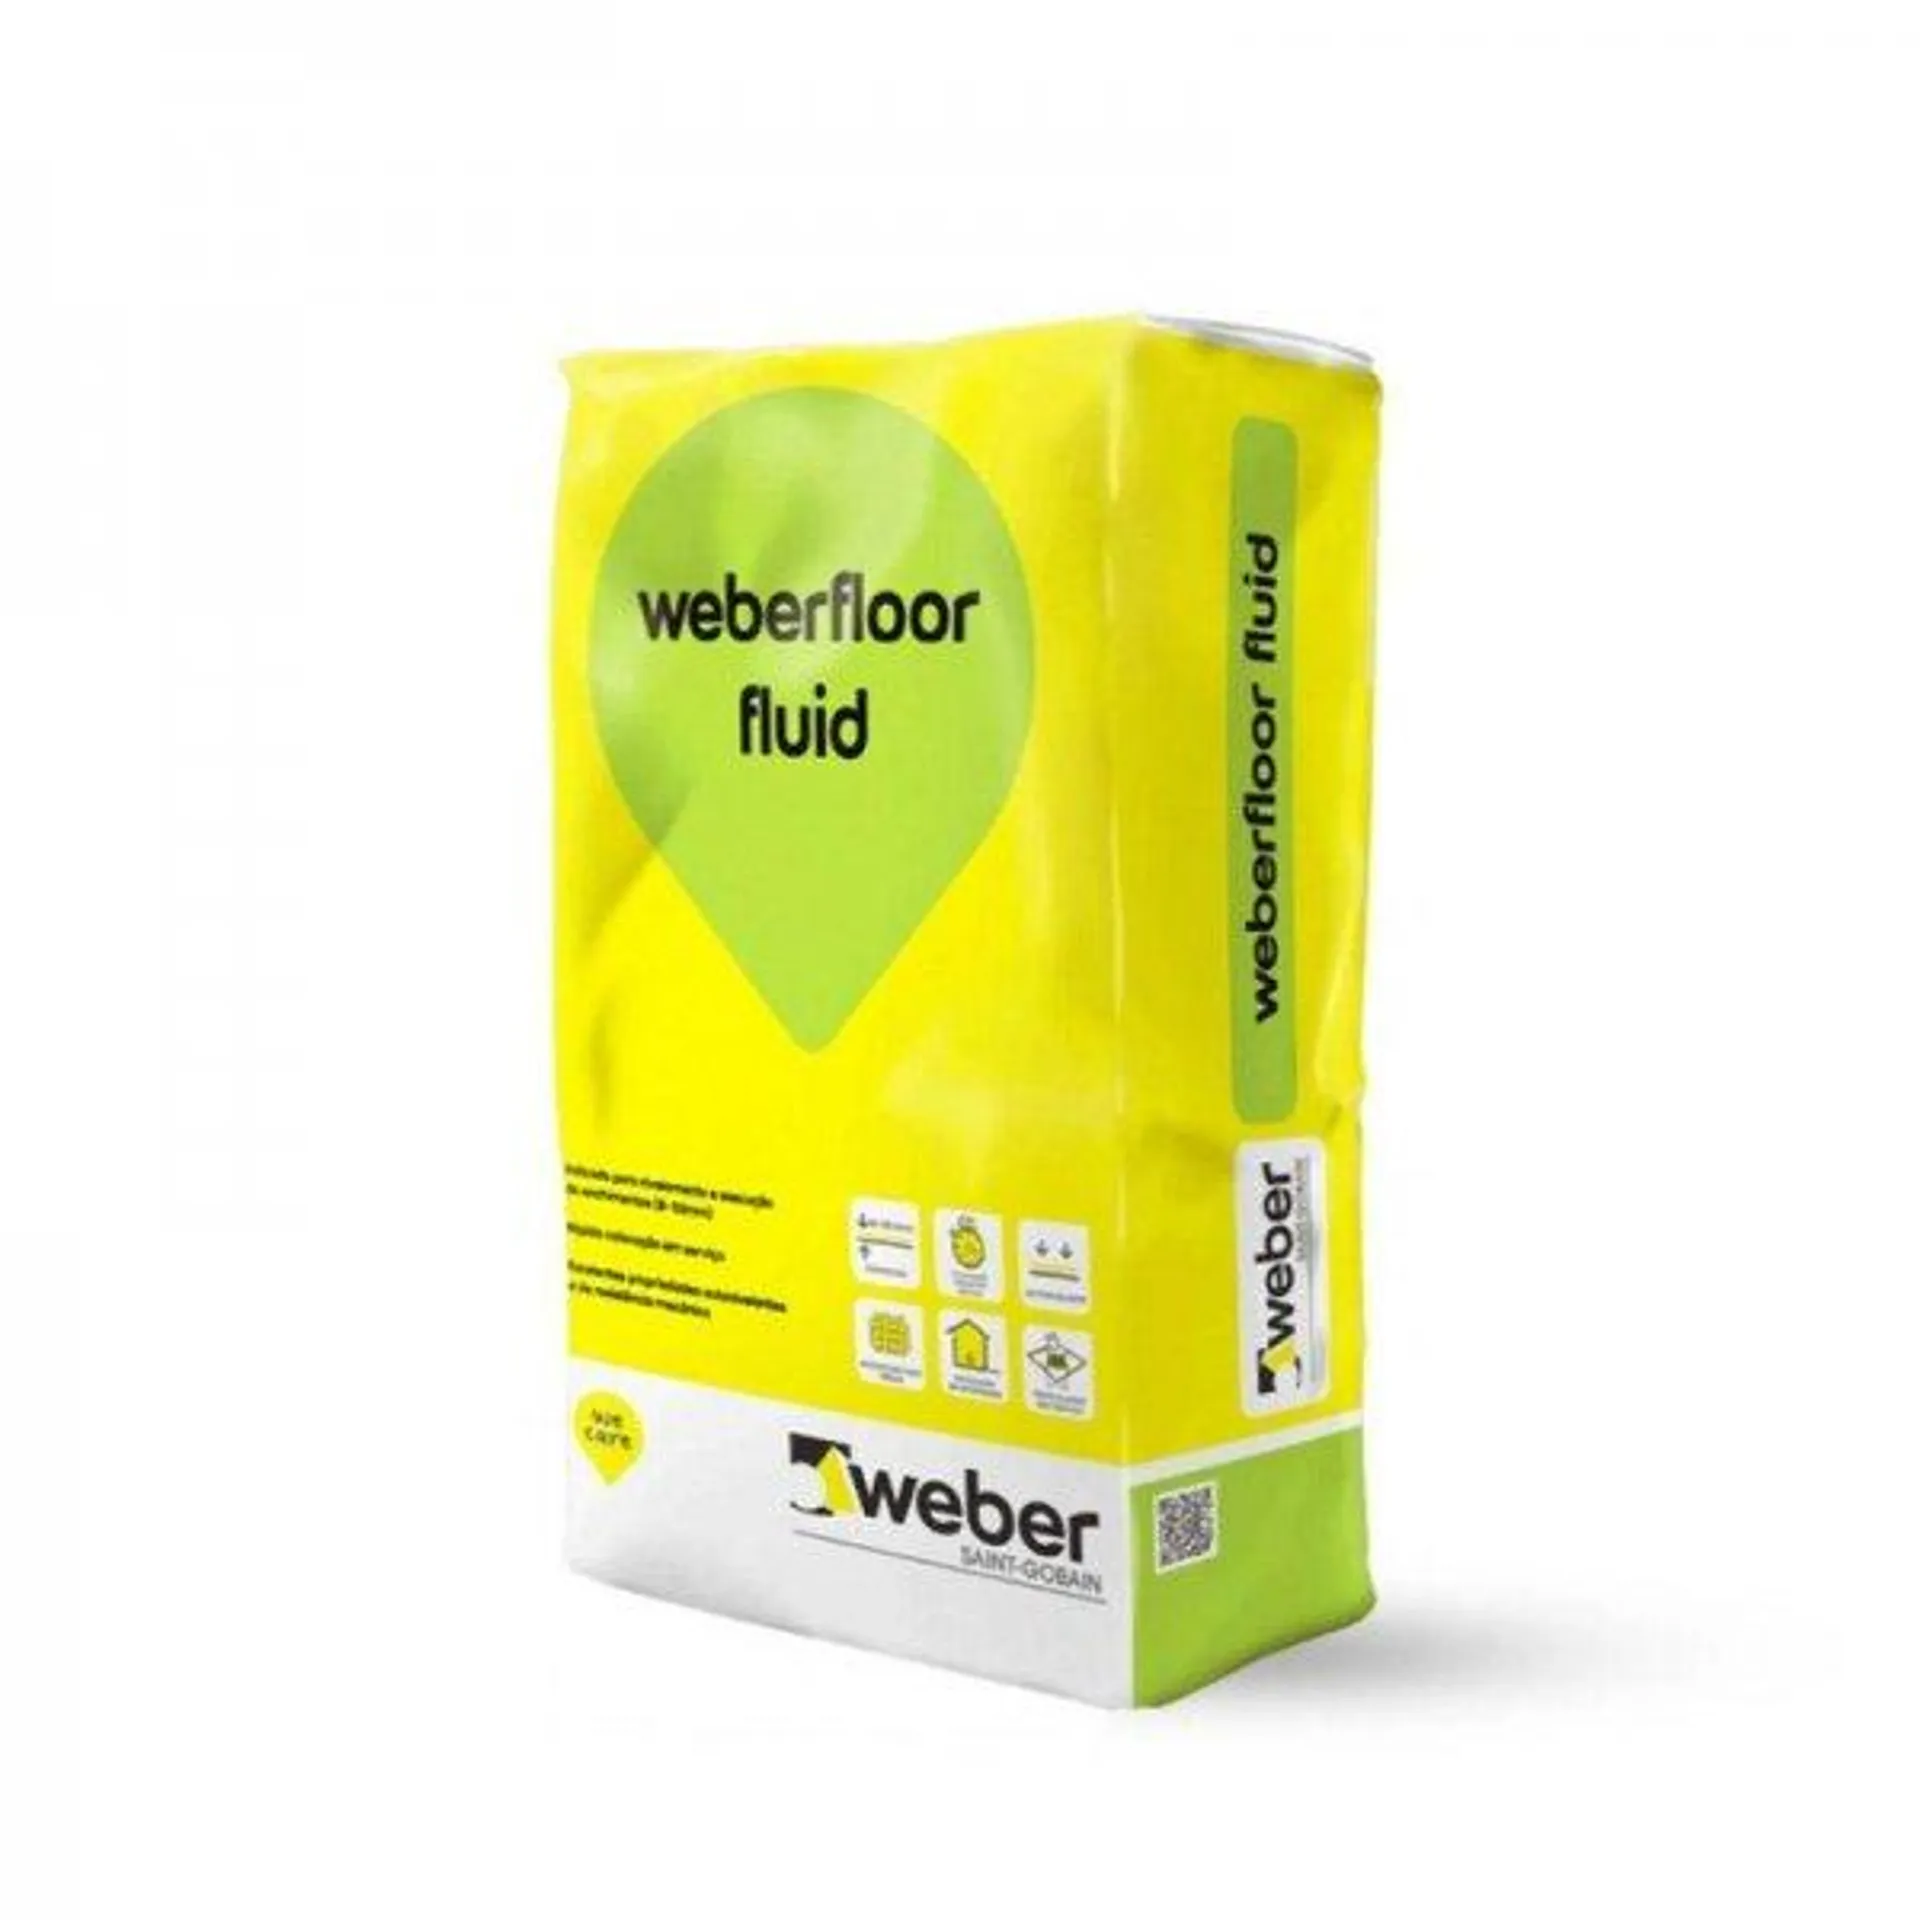 Weber.floor fluid cinza (25 kg)